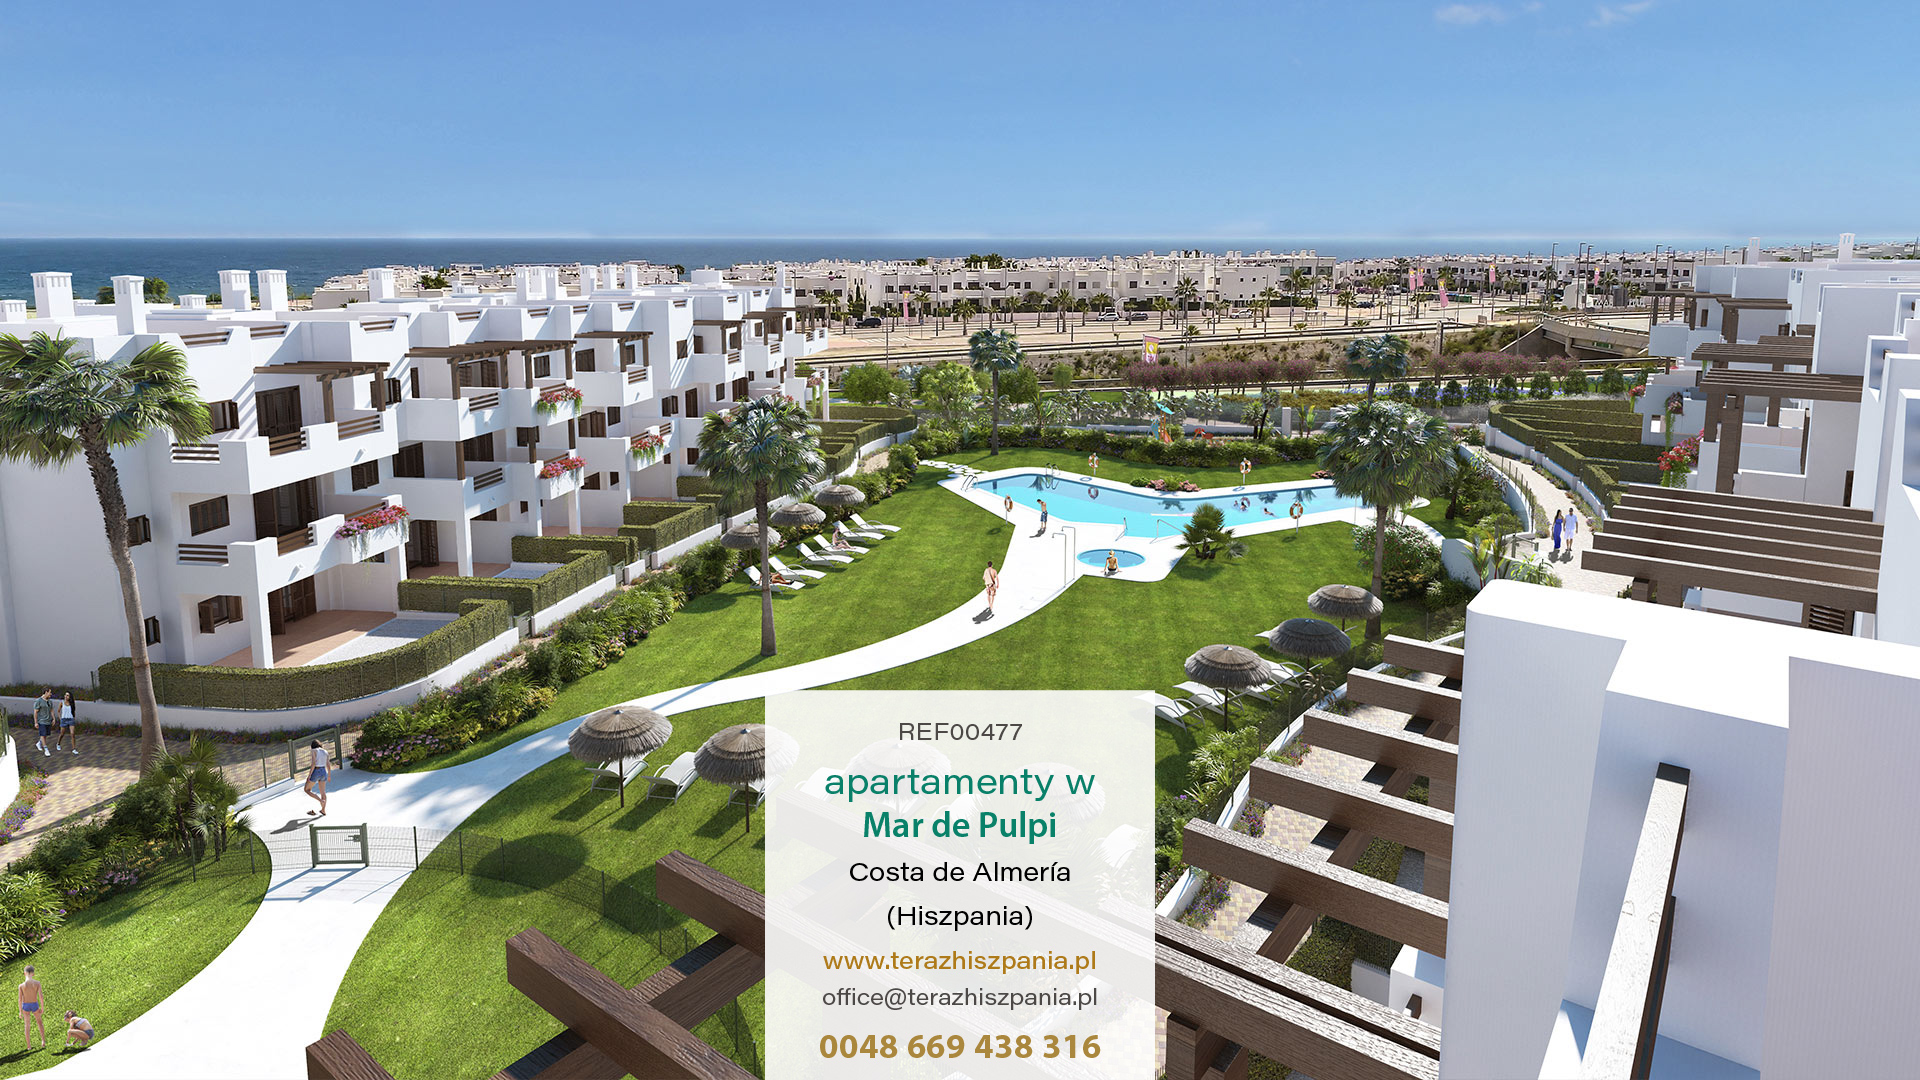 REF00477 Apartamenty w Mar de Pulpi z na wybrzeżu Almerii, w południowej Hiszpanii.